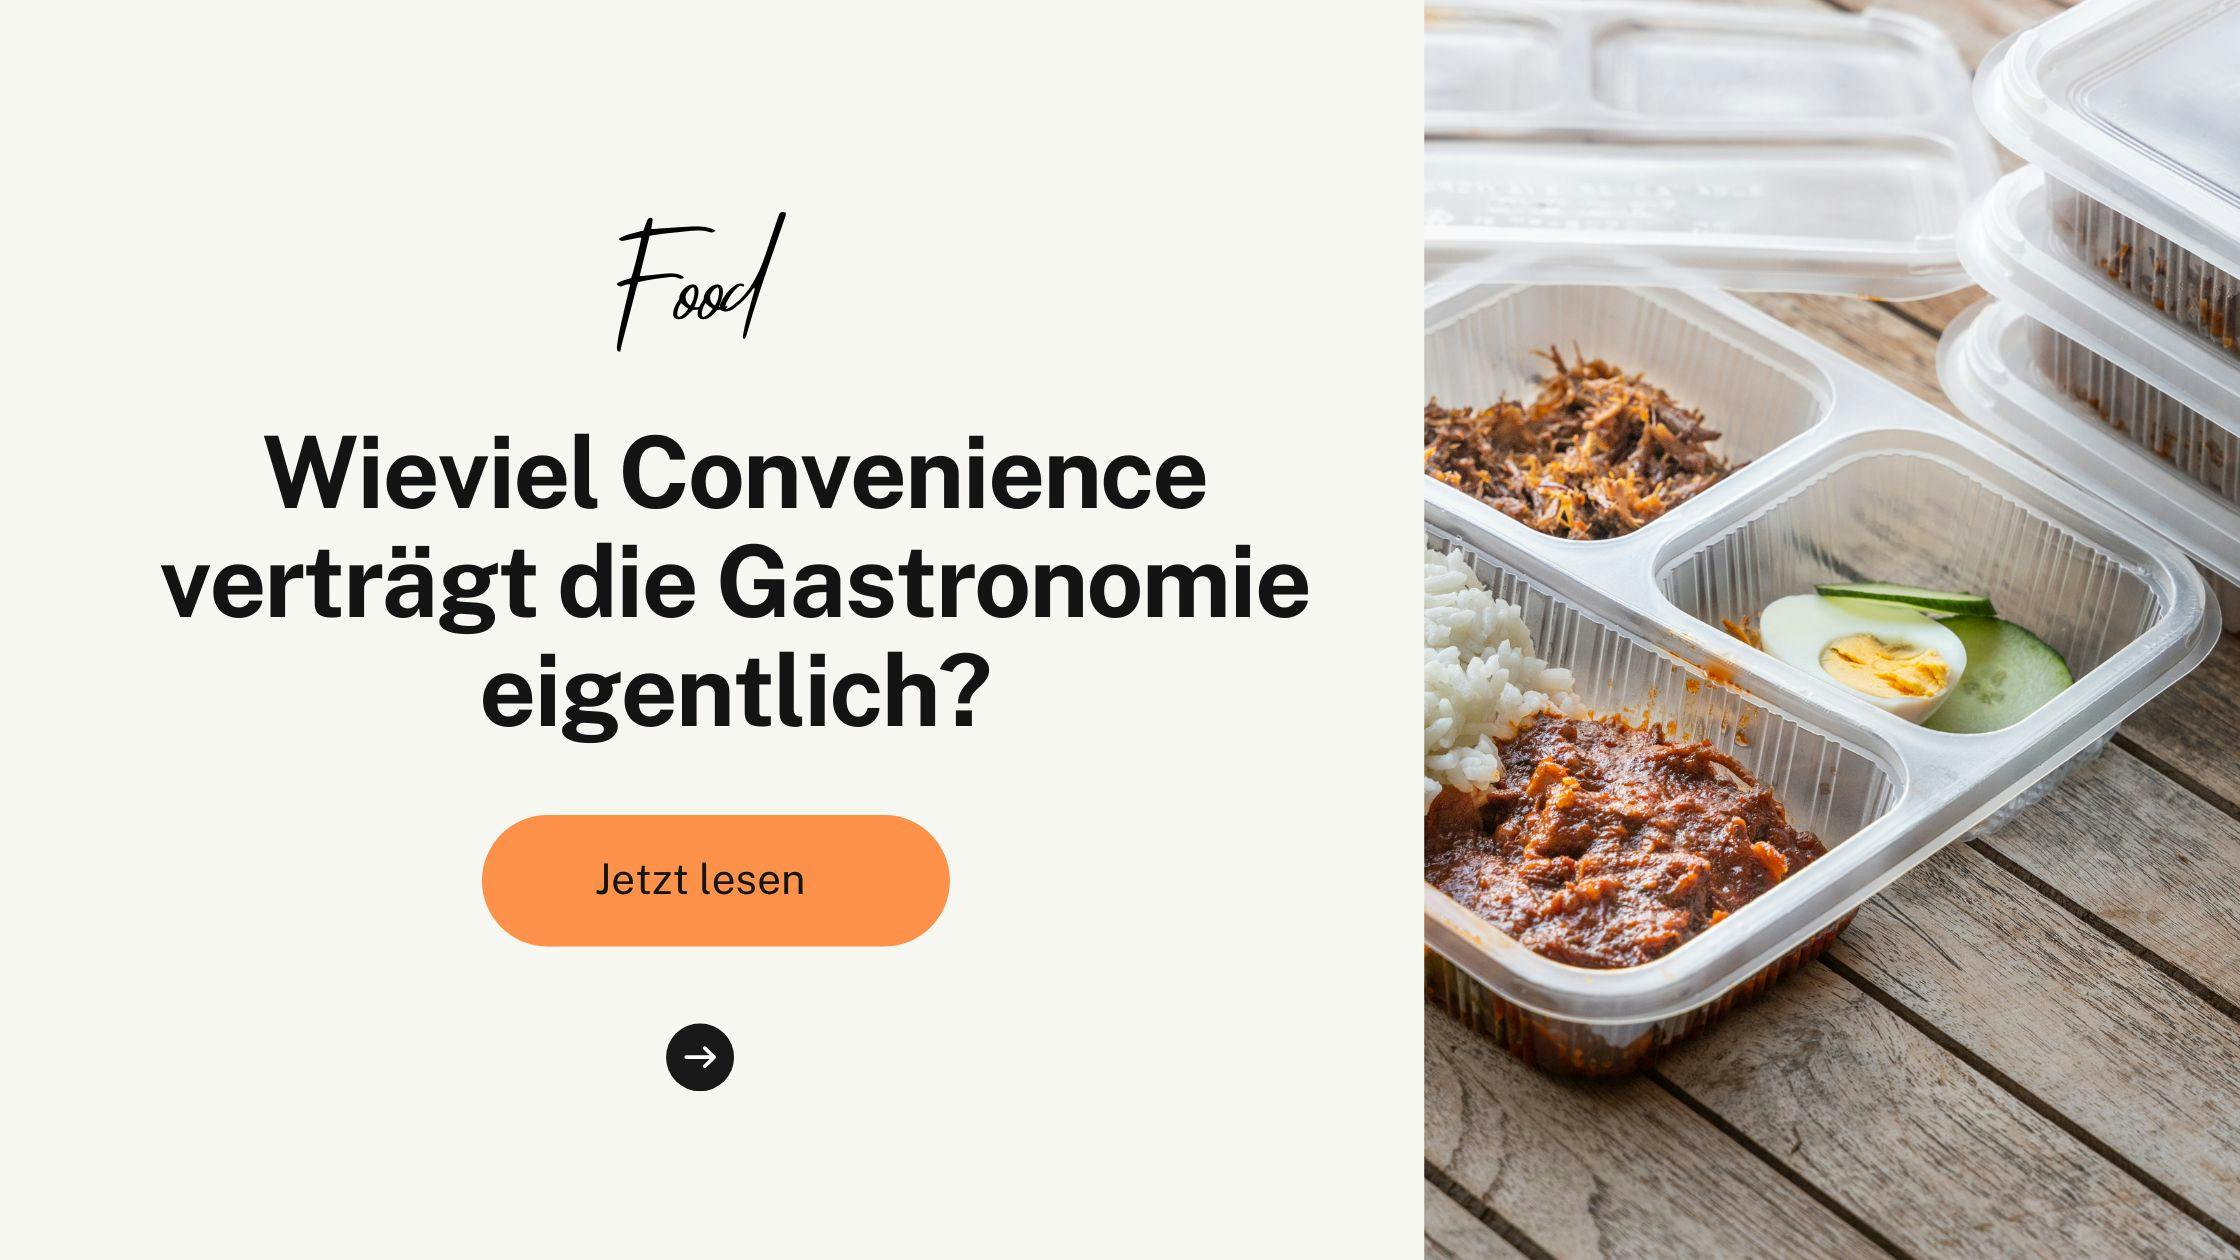 Wieviel Convenience verträgt die Gastronomie eigentlich?